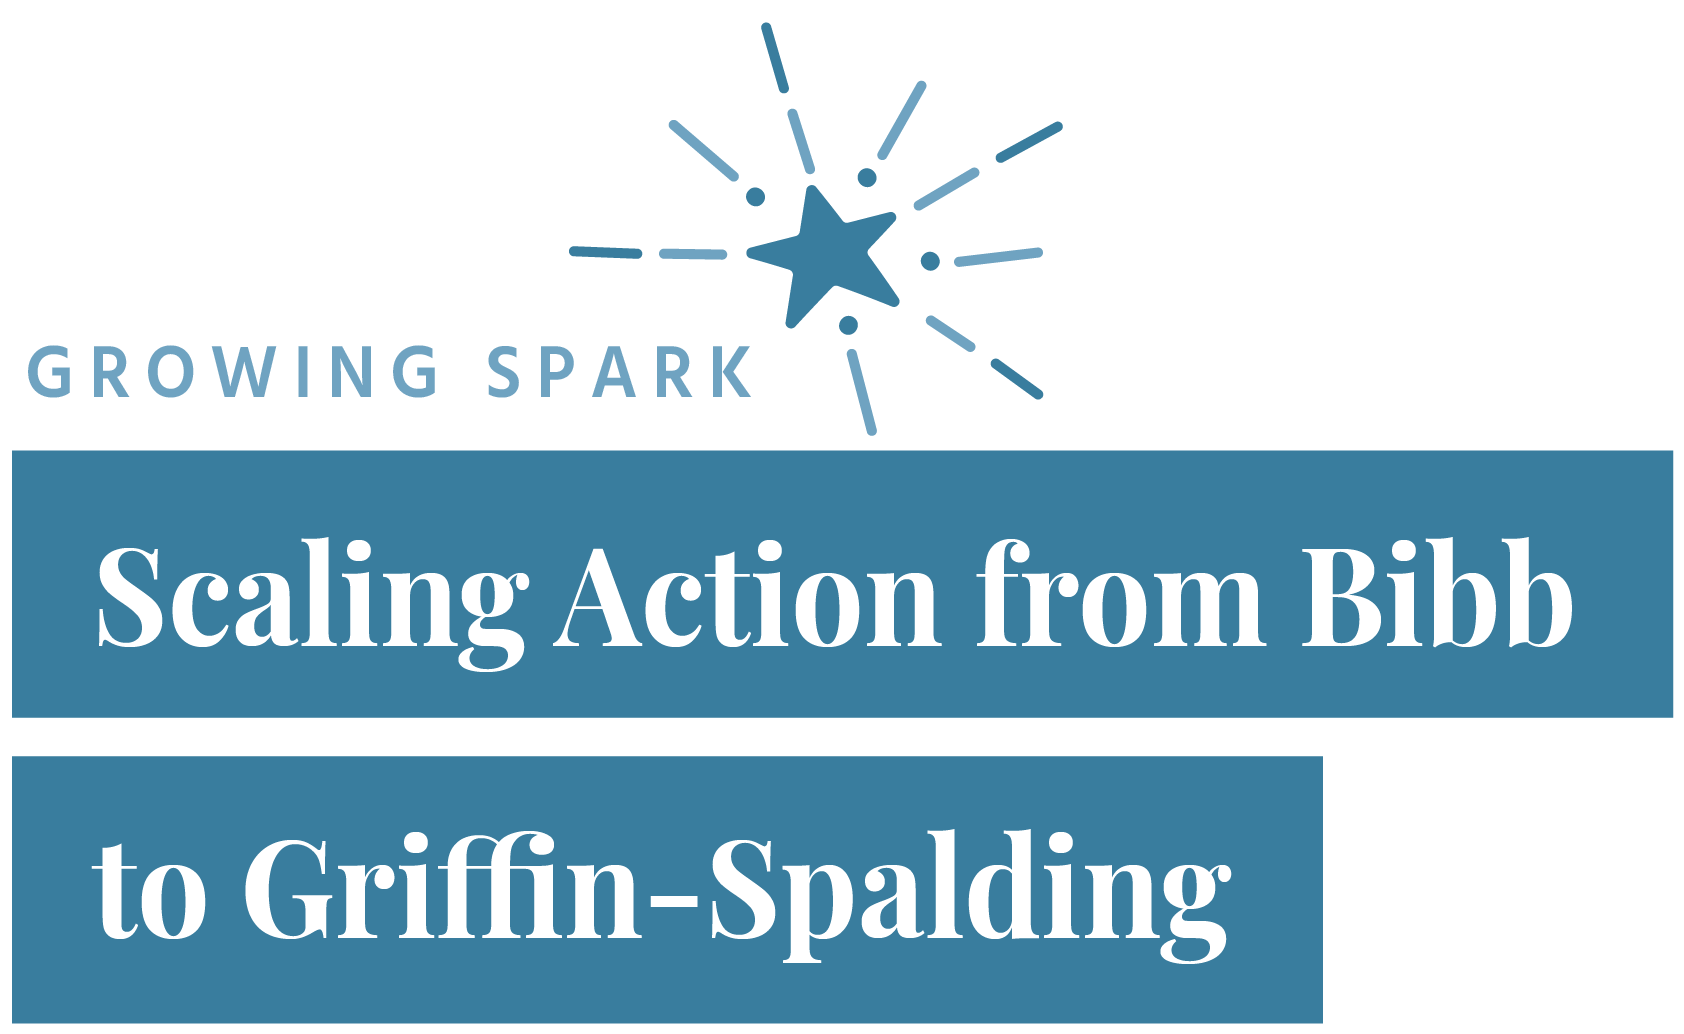 Bibb Gridding Spalding-15